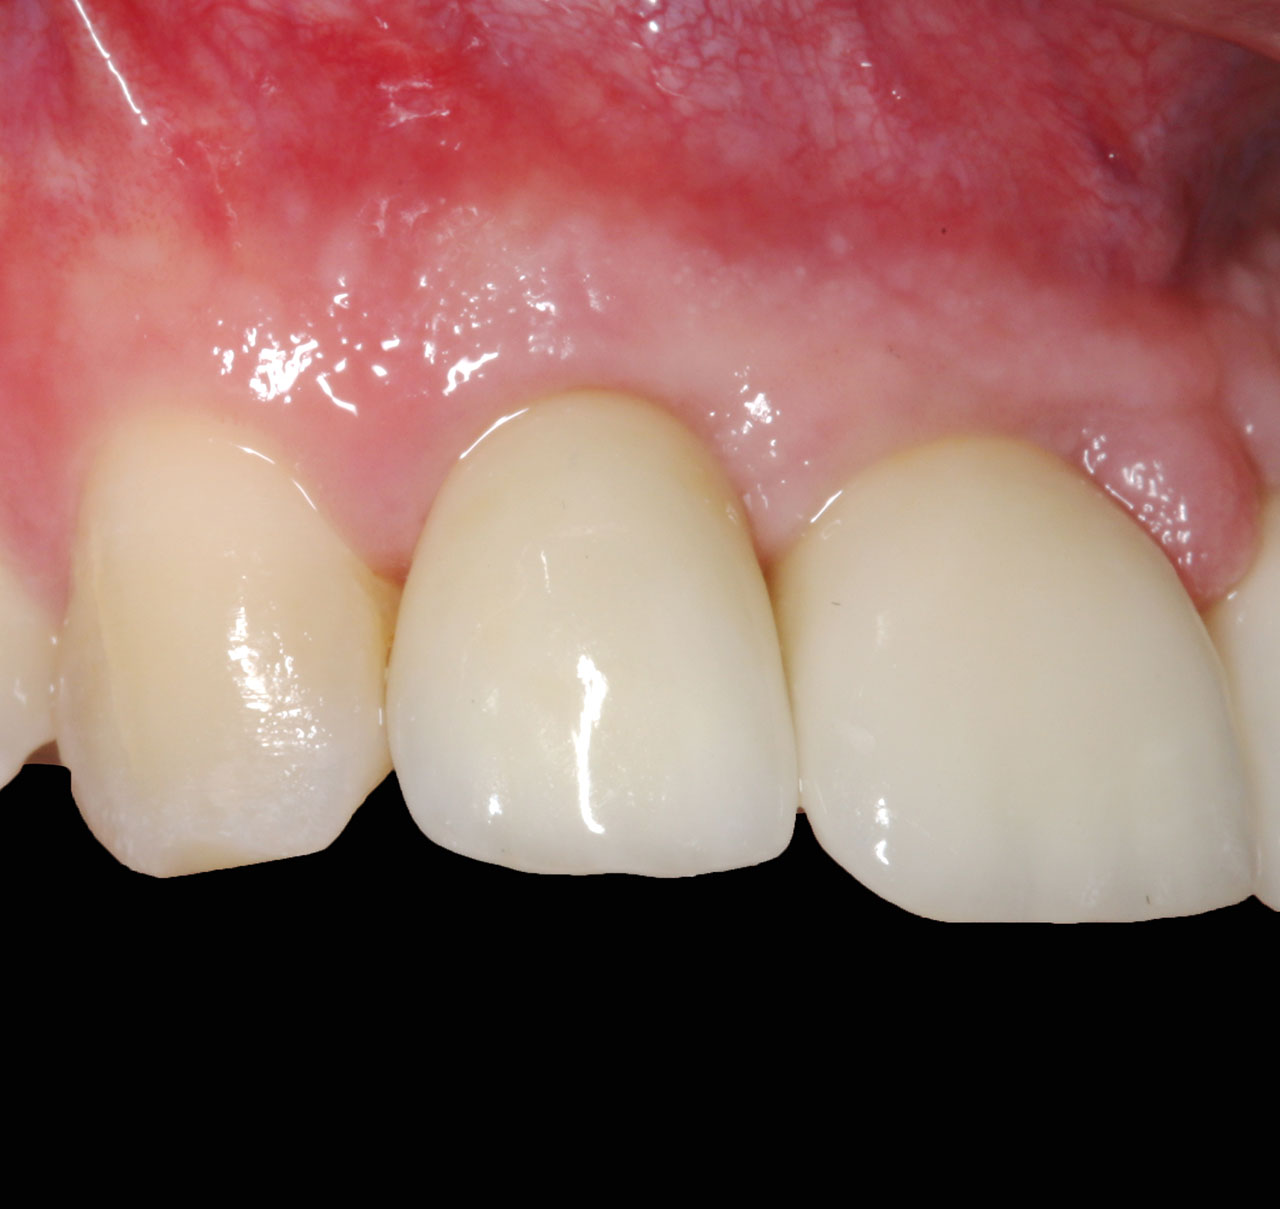 Abb. 16 Frontalansicht der fertigen Versorgung mit natürlichen Zahnfleischverhältnissen.